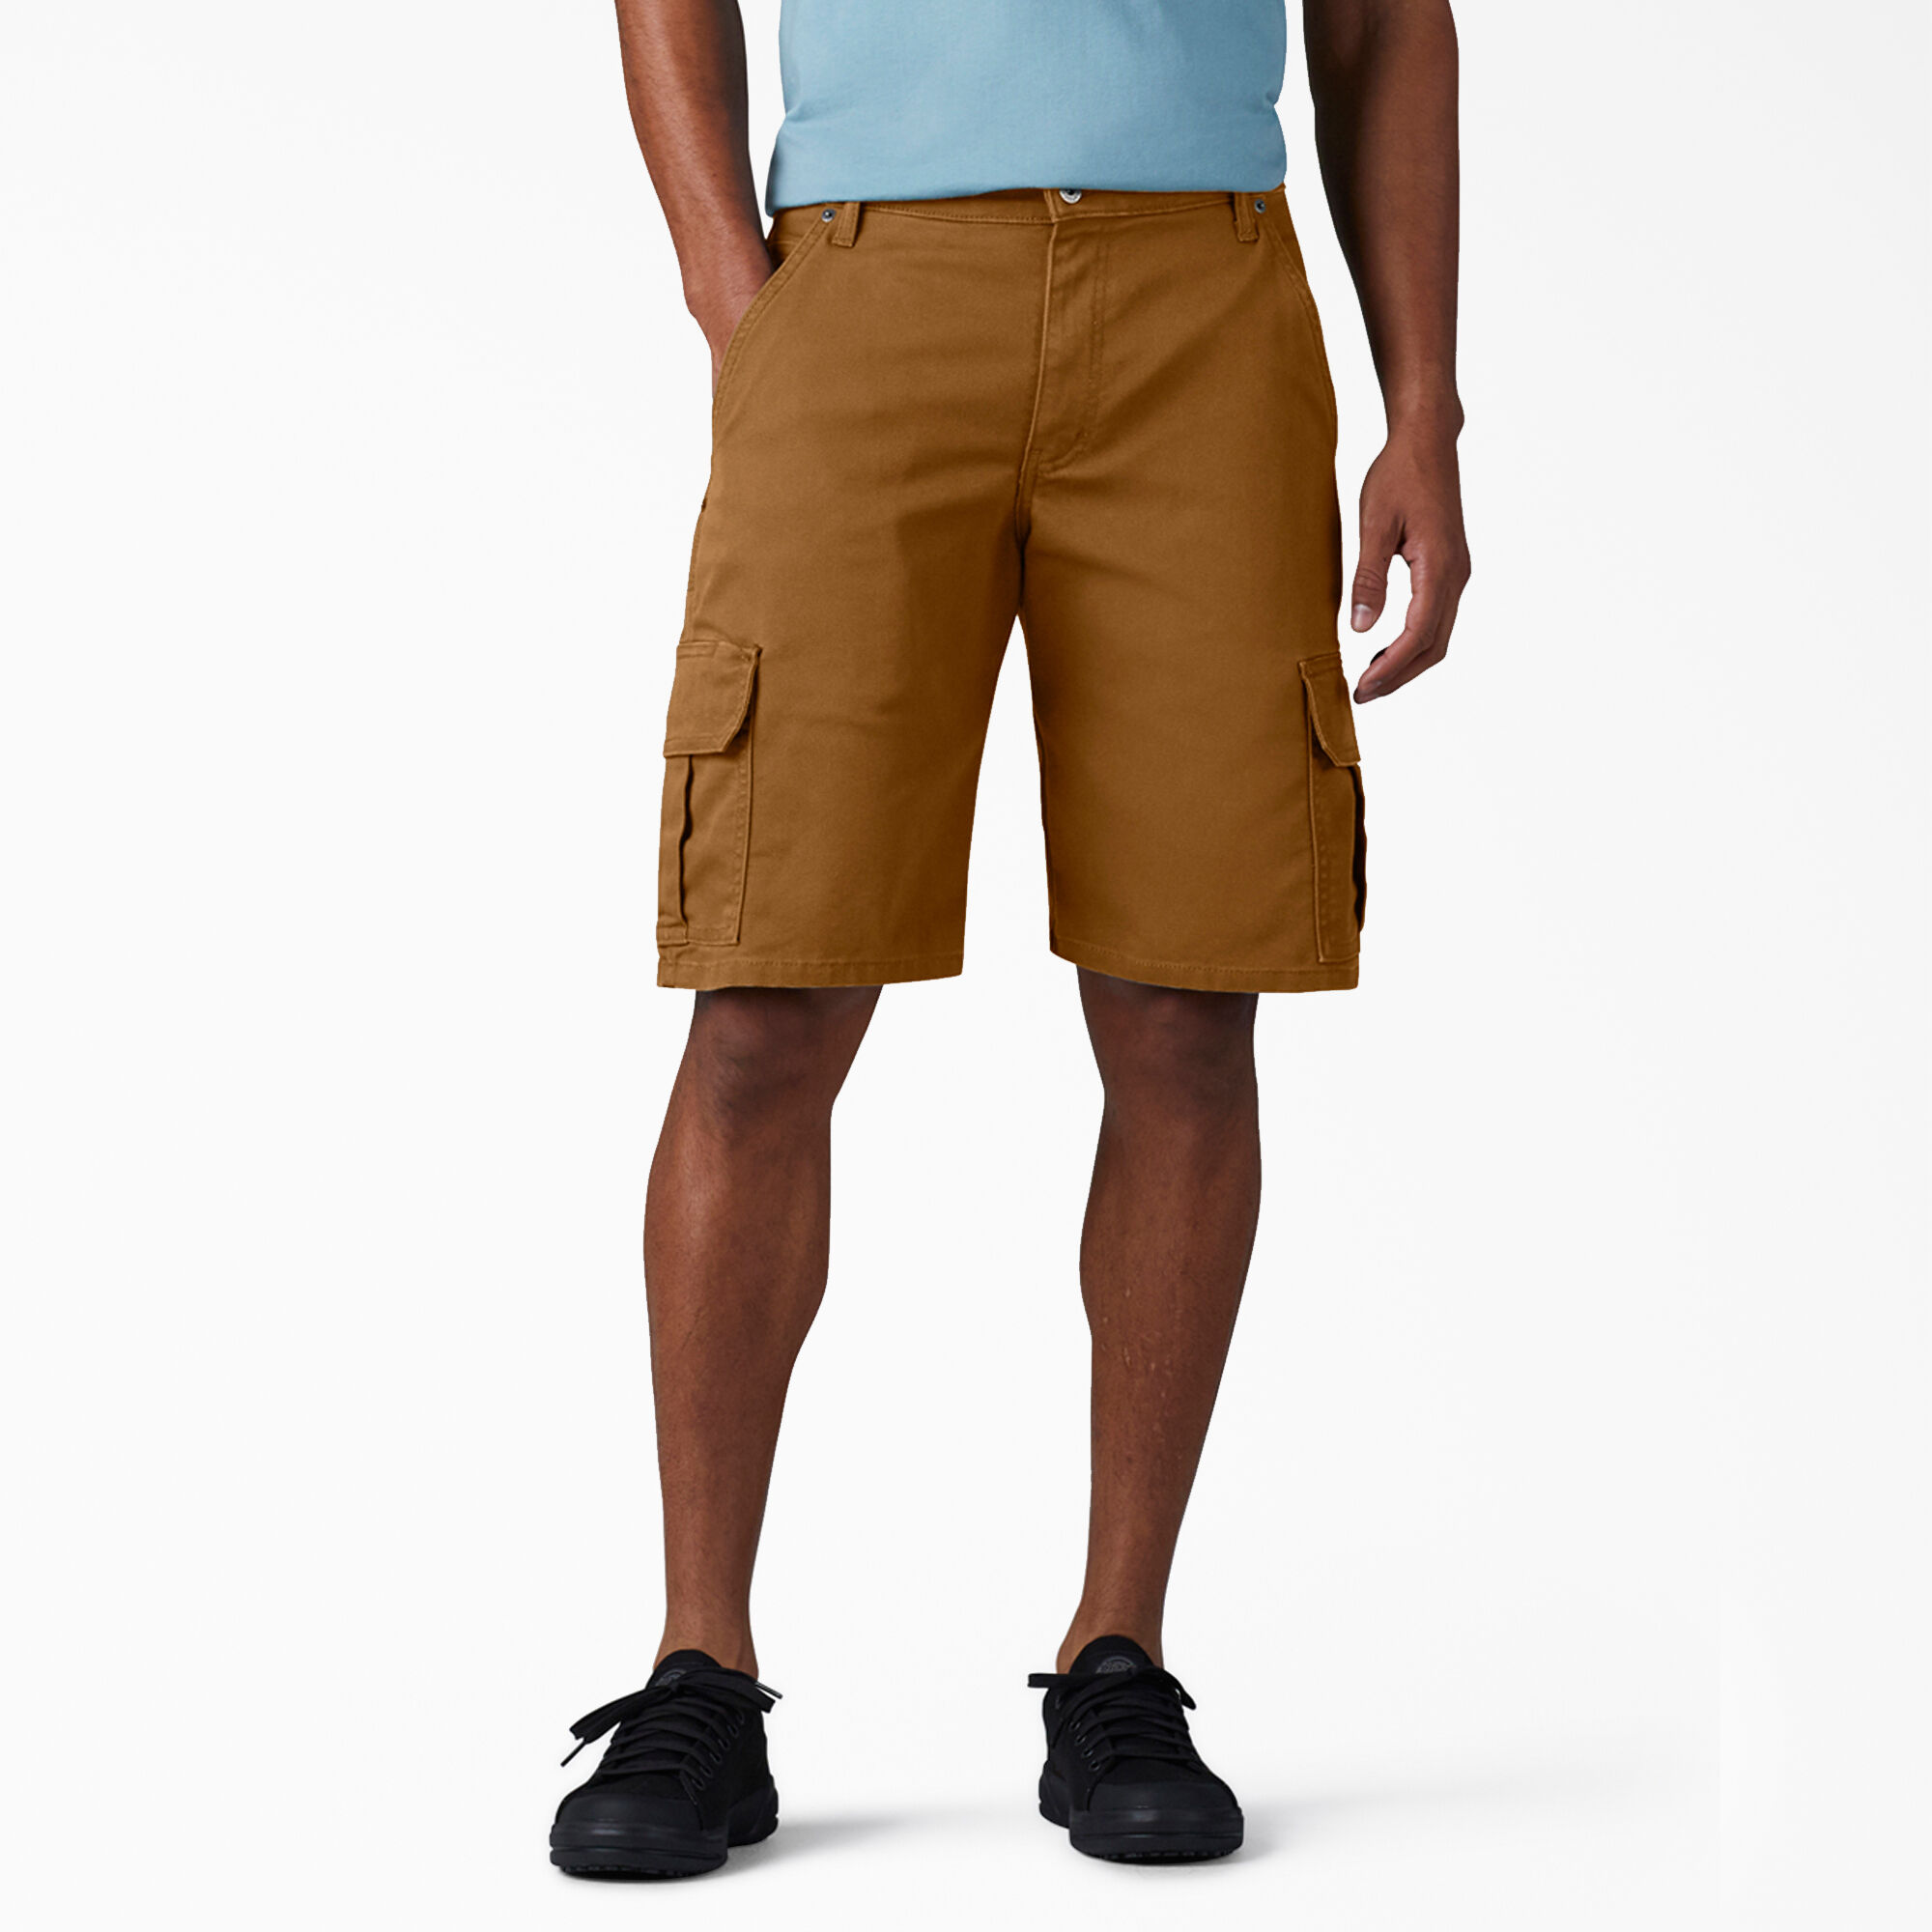 size 48 men's cargo shorts